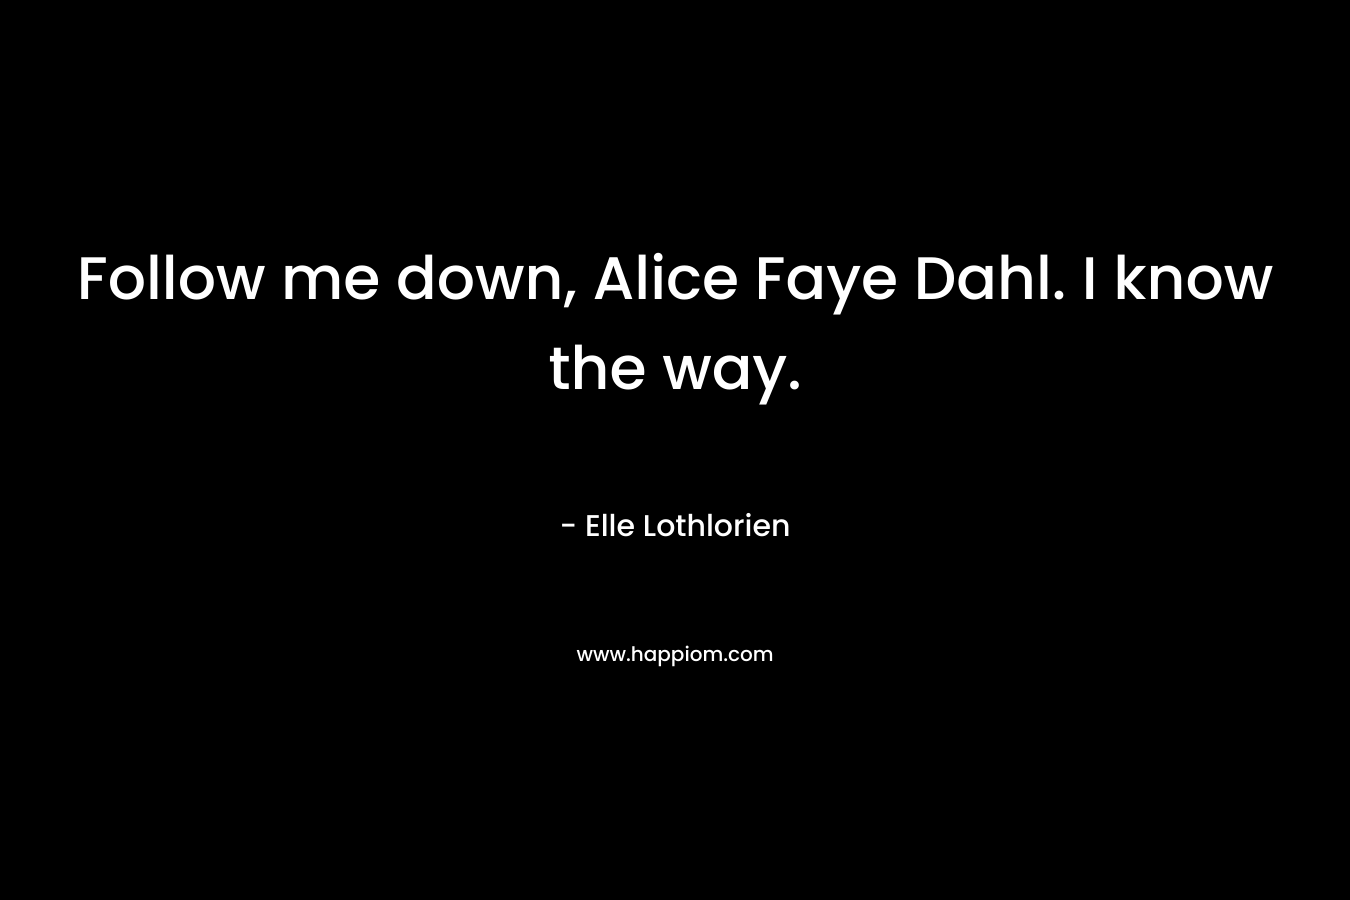 Follow me down, Alice Faye Dahl. I know the way.